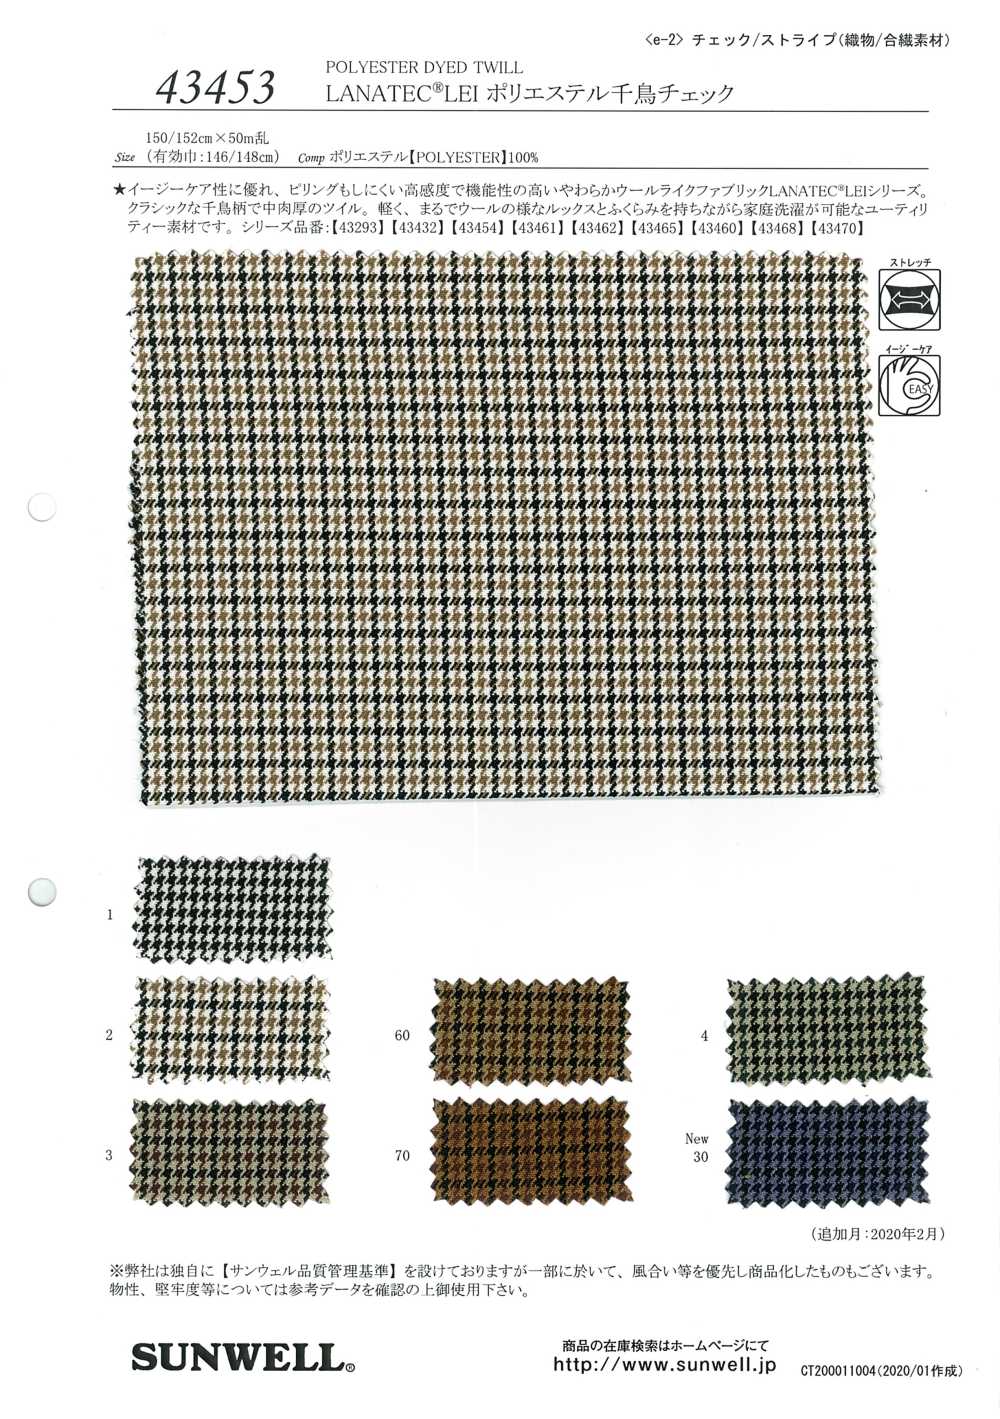 43453 LANATEC(R) LEI Polyester Pied-de-poule[Fabrication De Textile] SUNWELL